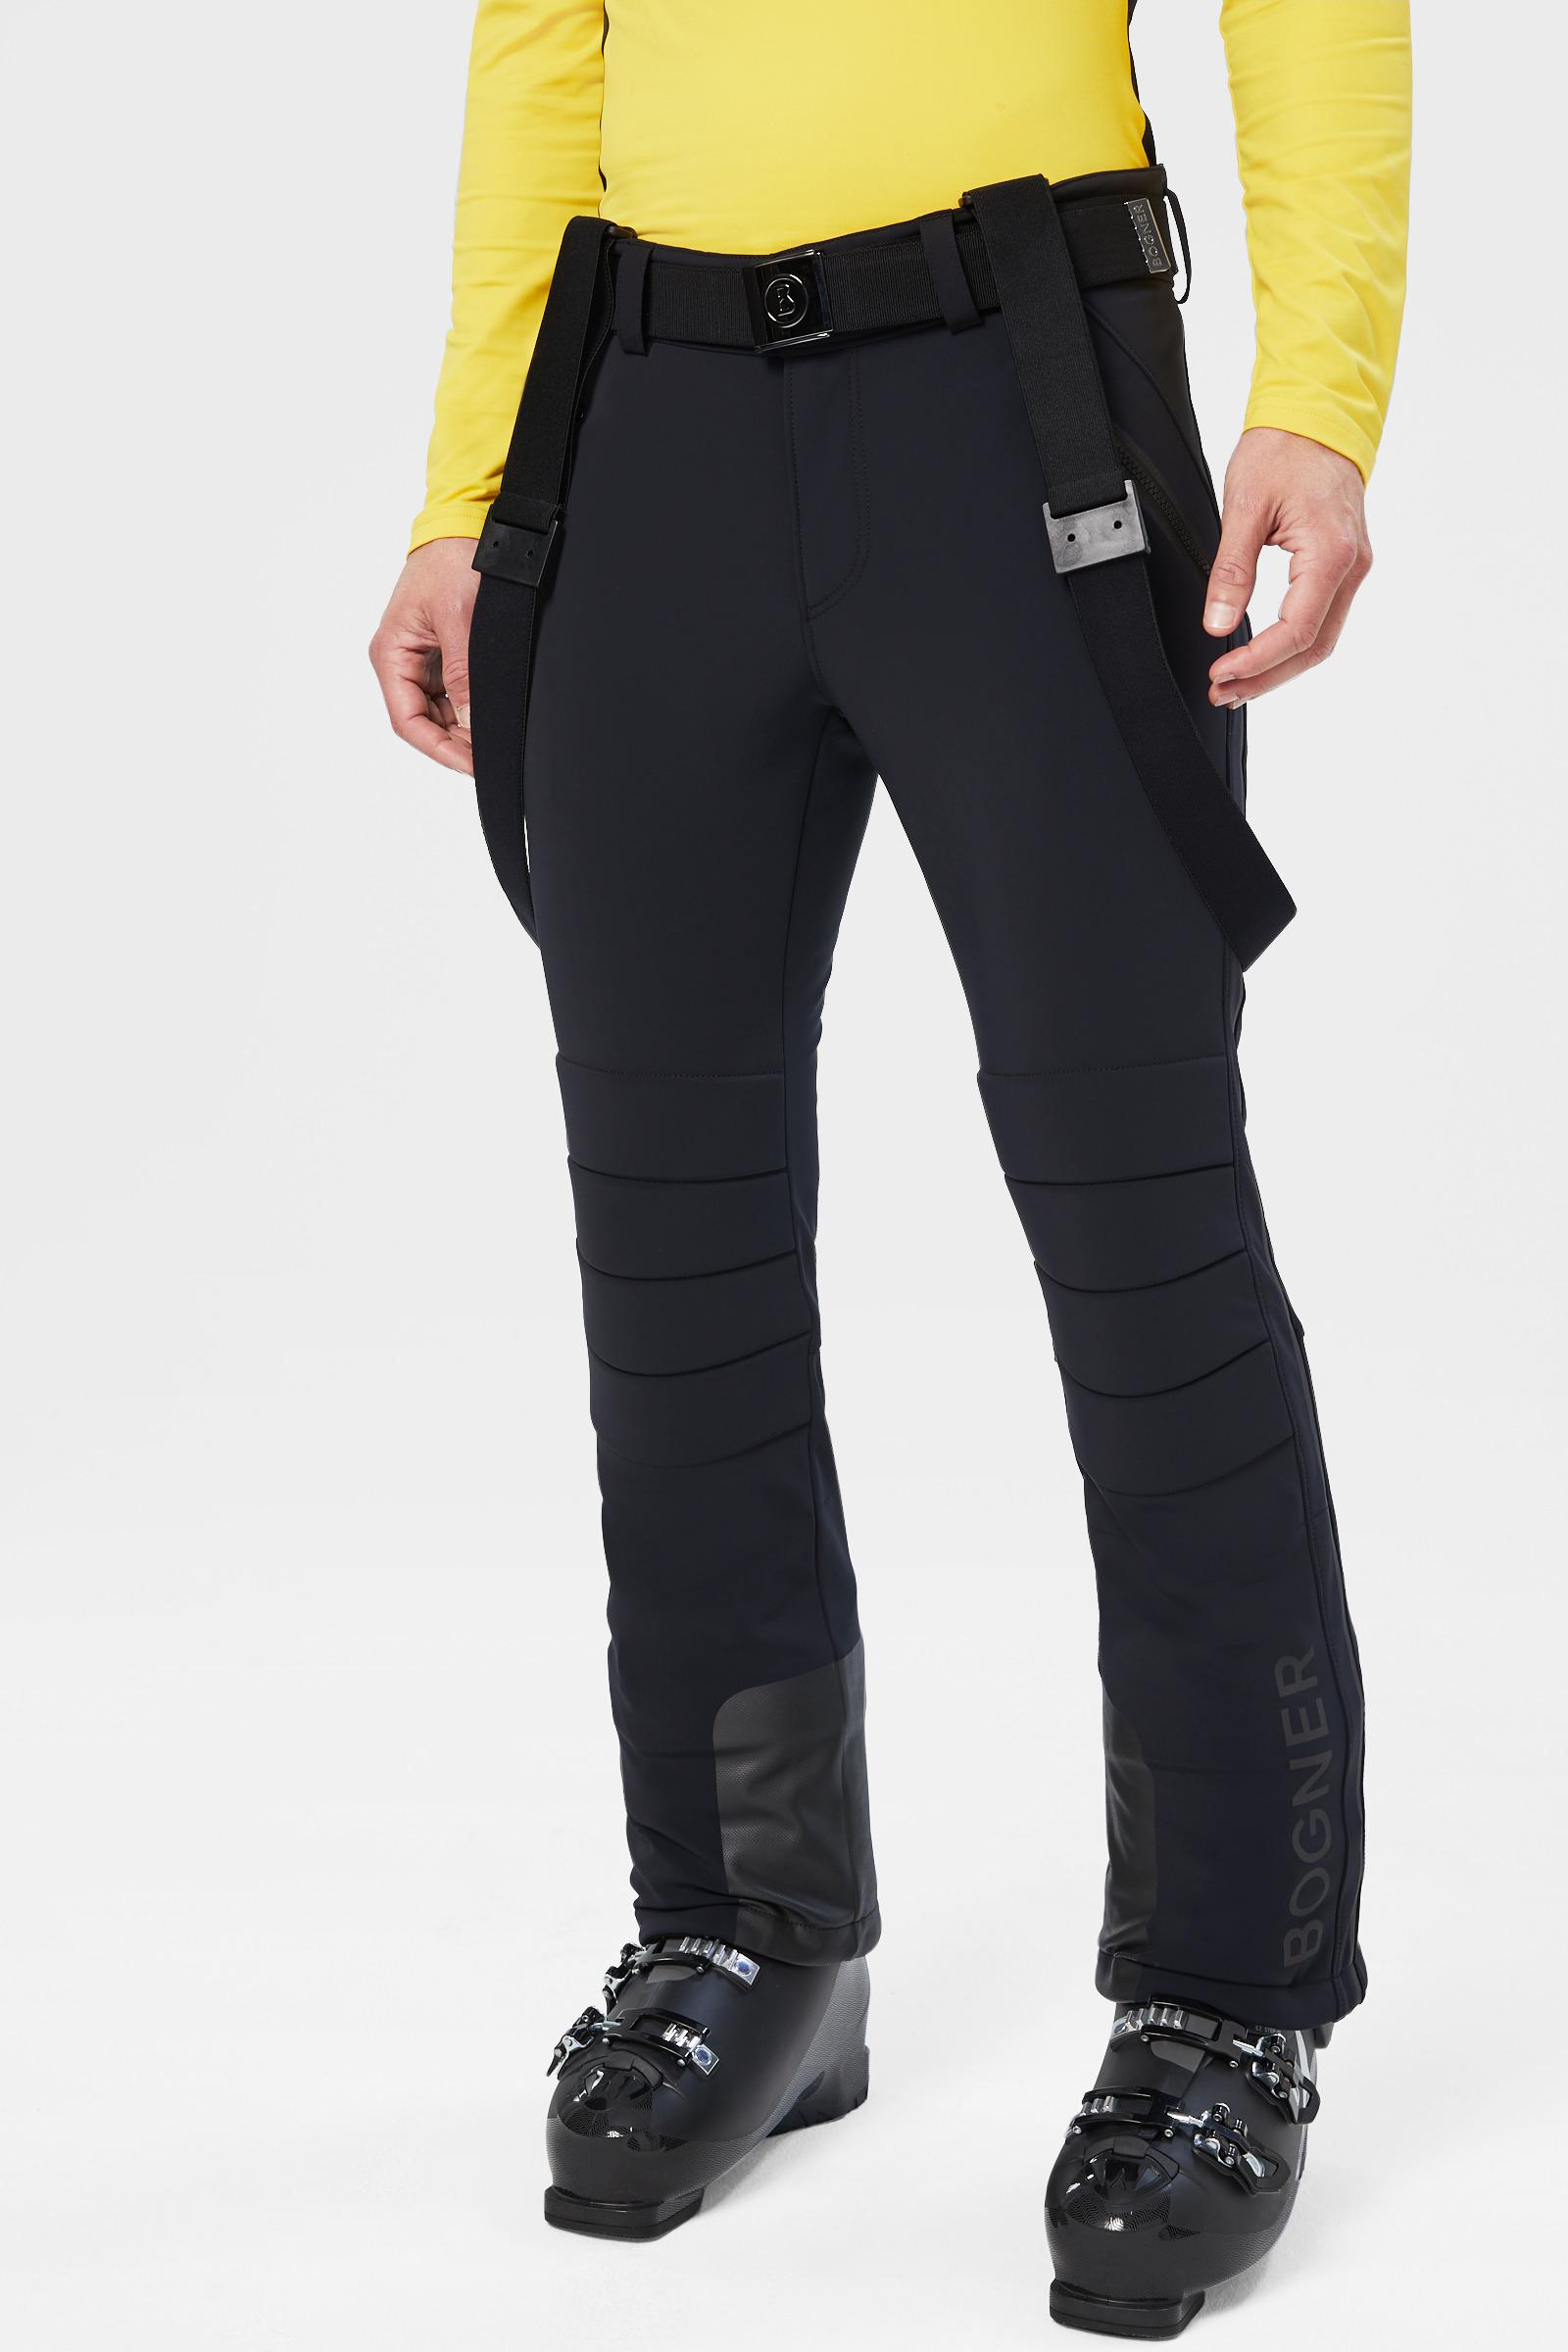 Bogner Curt Ski Pants In Black for Men | Lyst Canada